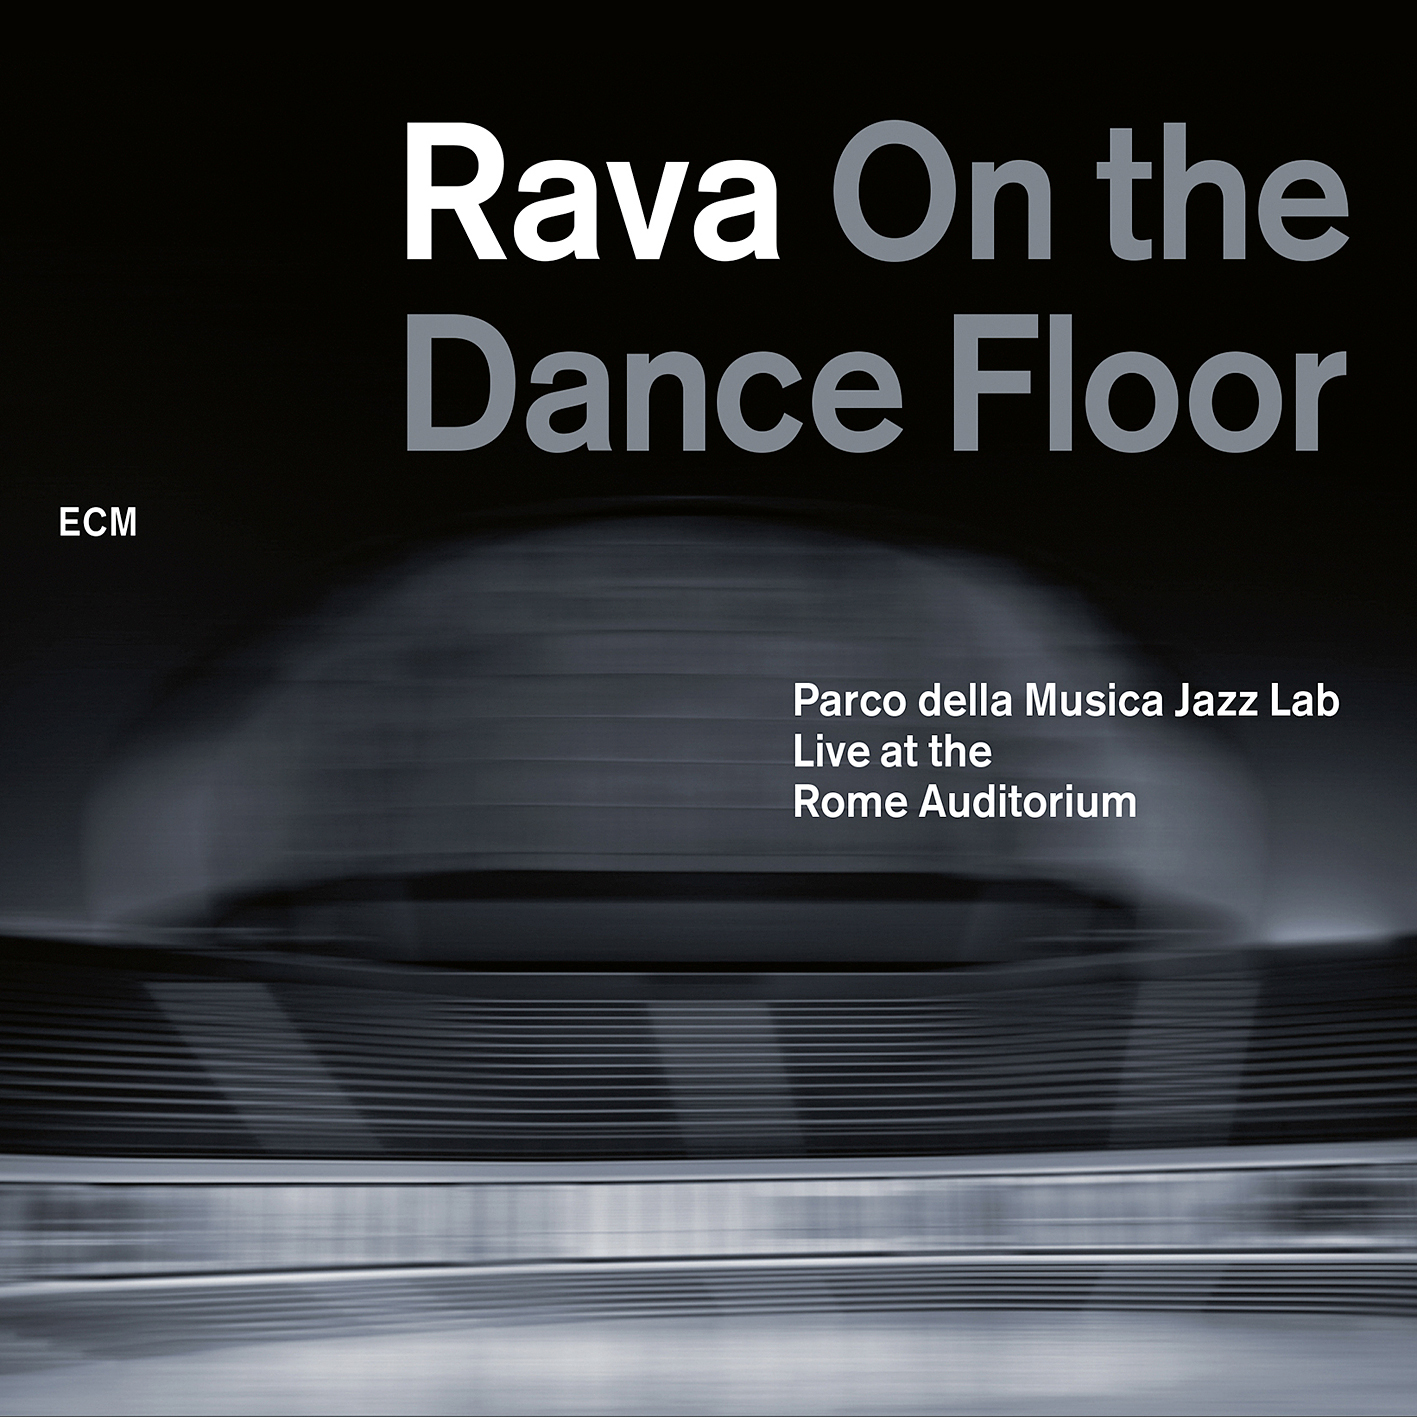 Enrico Rava - On The Dance Floor (2012/2016) [AcousticSounds FLAC 24bit/48kHz]